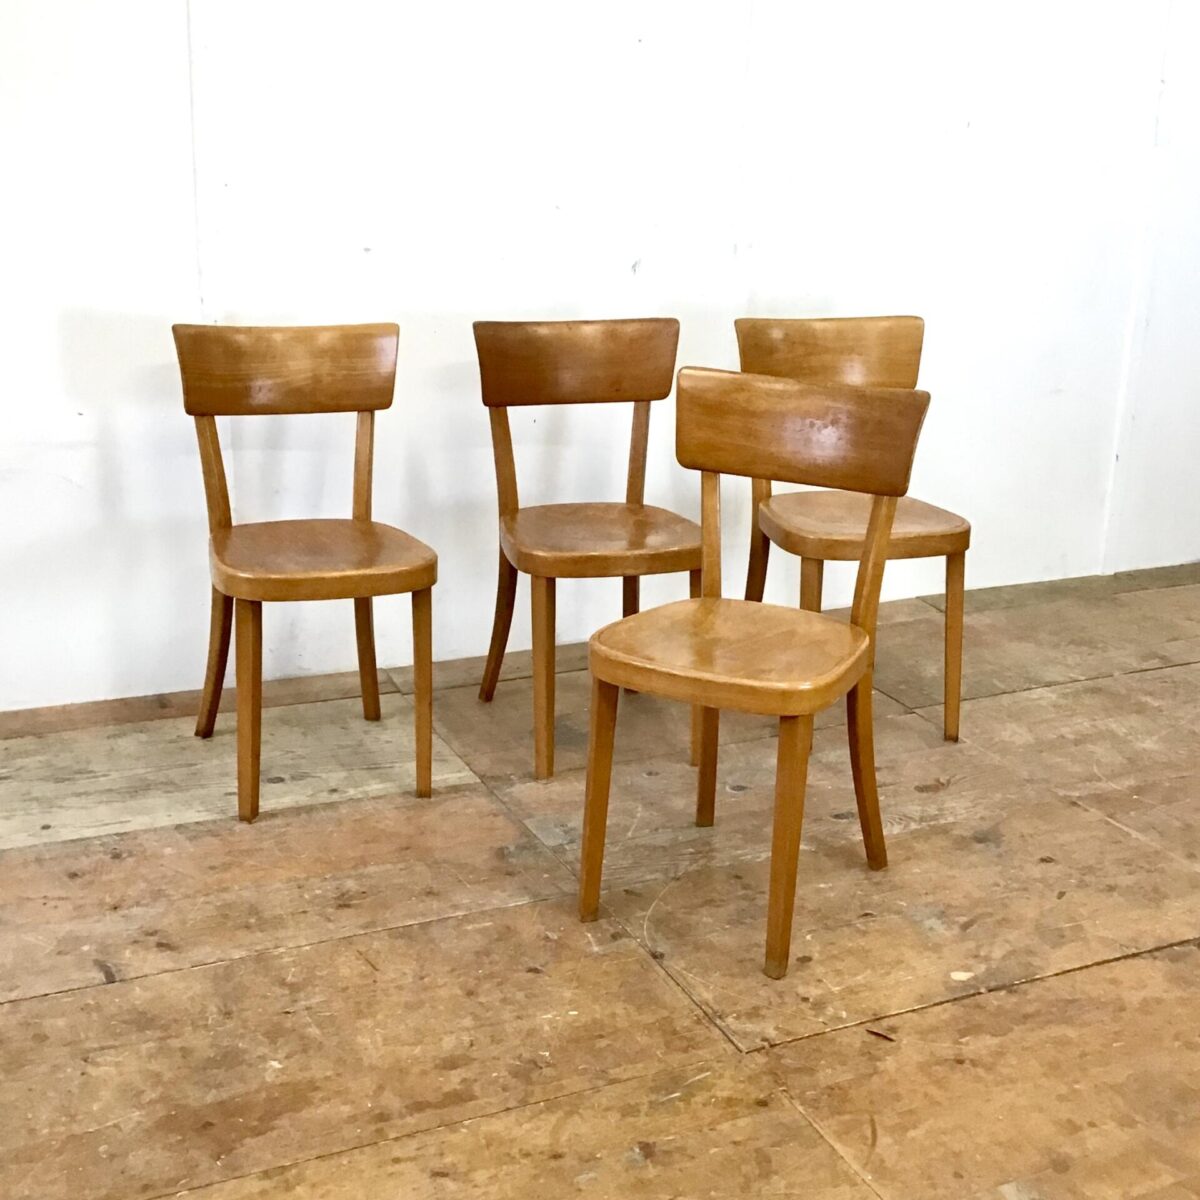 Klassische bequeme Esszimmer Stühle. 30 horgenglarus Beizenstühle. Preis pro Stuhl. Die Stühle sind in gebrauchtem Zustand. Diverse Hicke Schrammen Lack abplatzer, technisch jedoch in stabilem Zustand. 